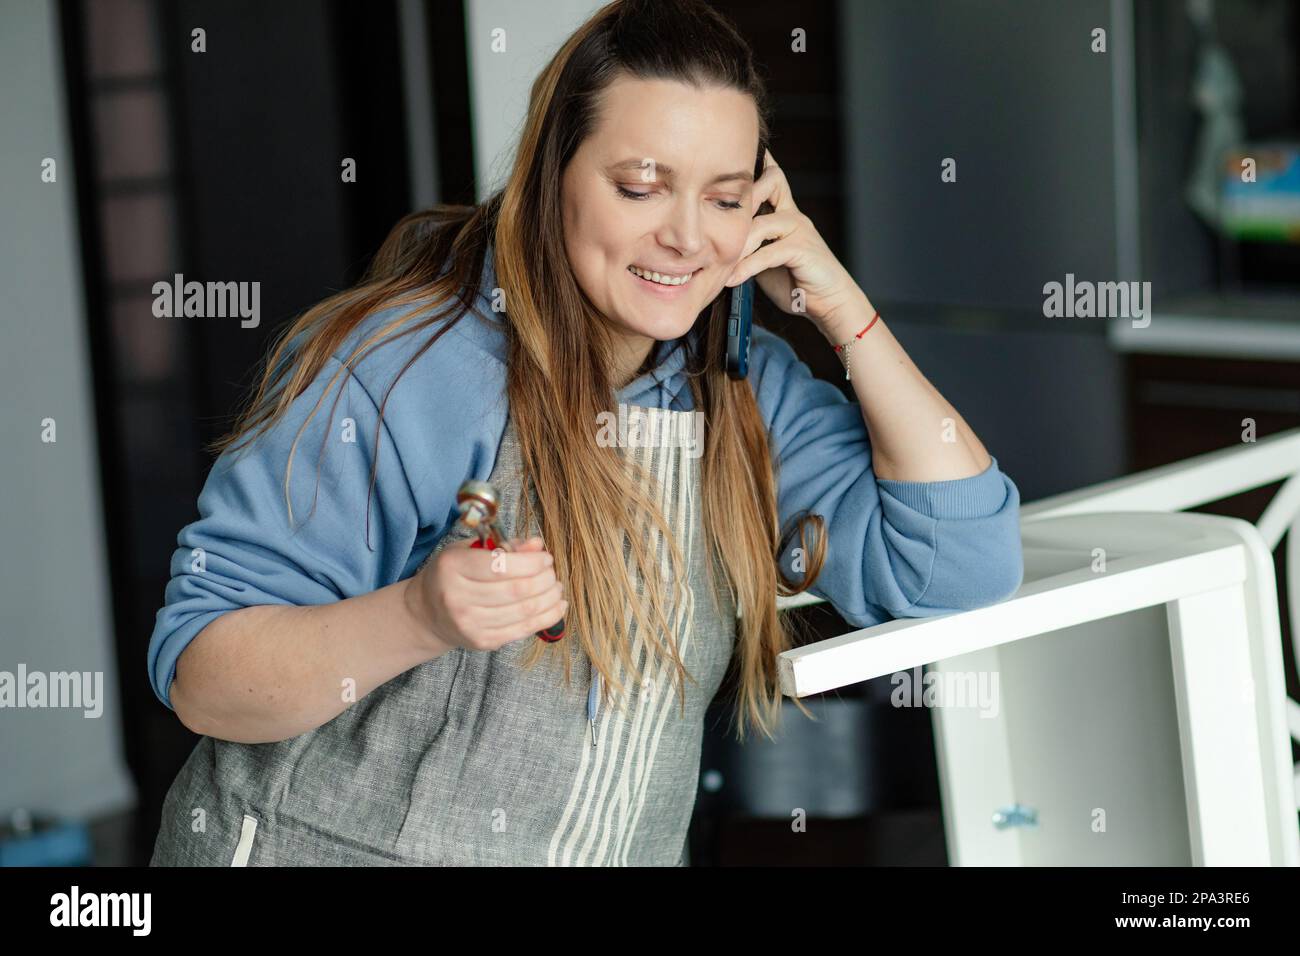 Hübsche braunhaarige Frau mit langen Haaren lächelt und spricht am Telefon, während sie in einer Tischlerwerkstatt arbeitet. Handgefertigte Arbeit. Stockfoto